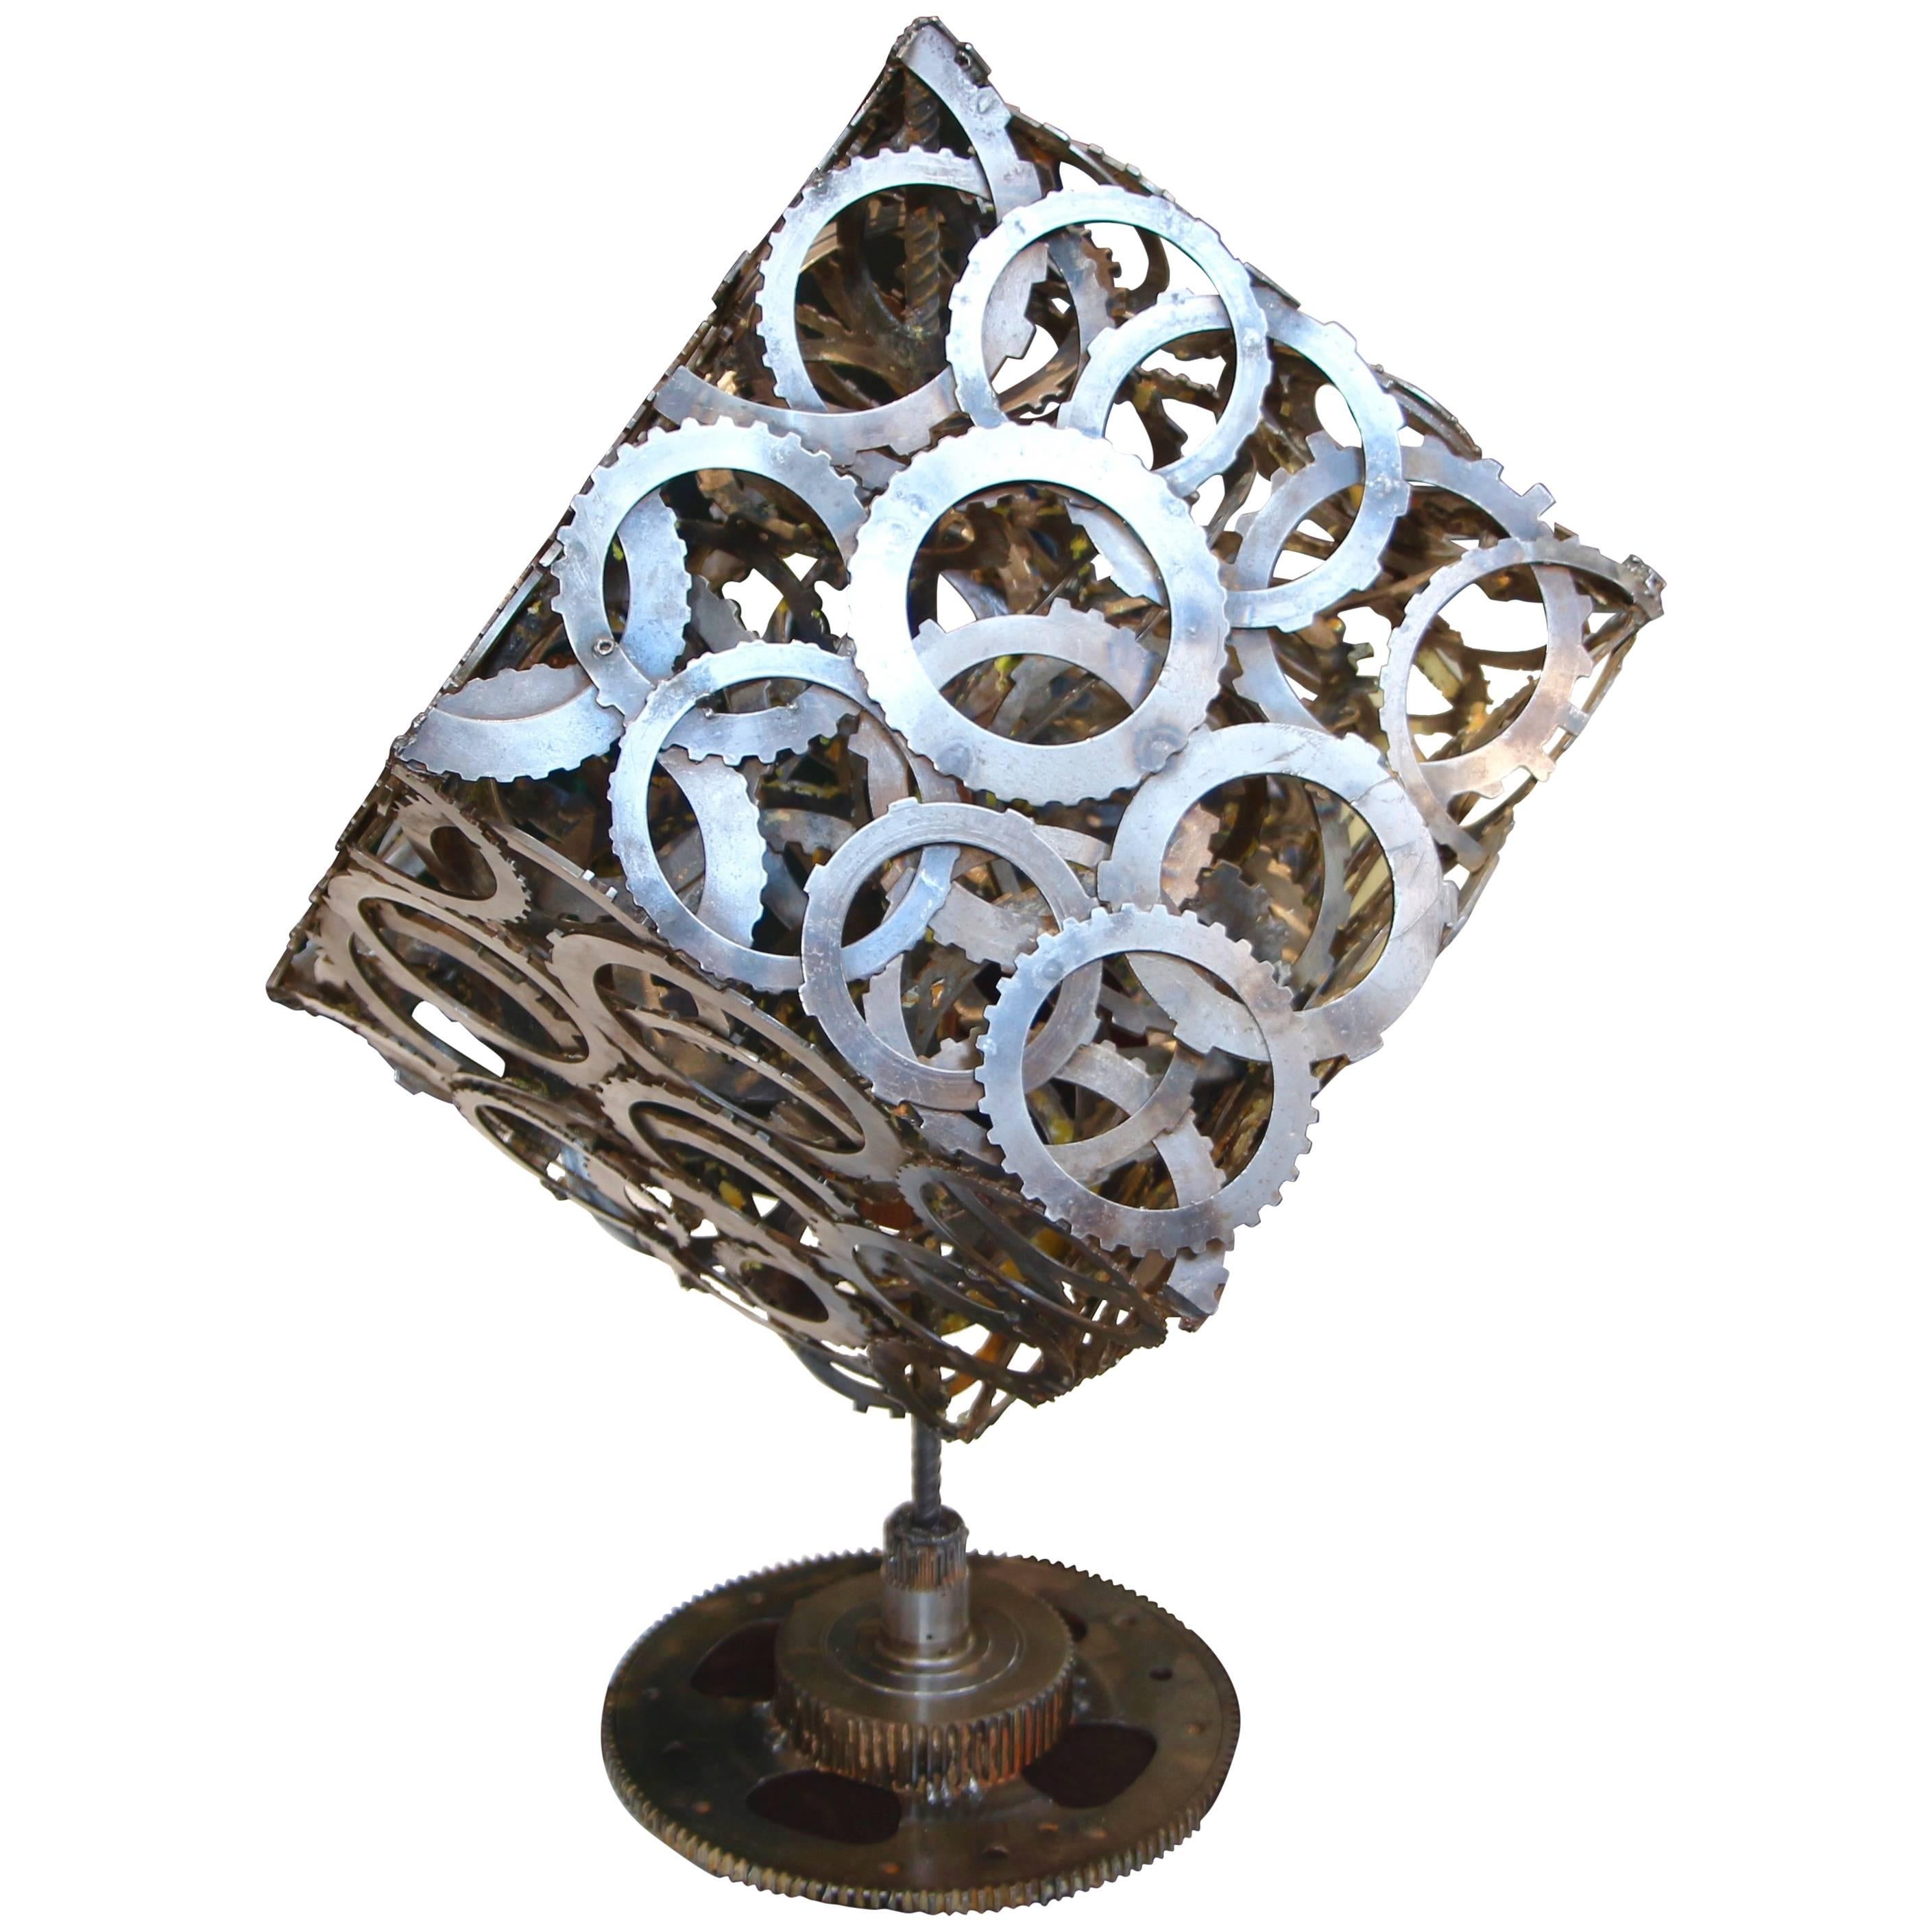 Superbe cube à équipement rotatif réalisé par un artiste abstrait